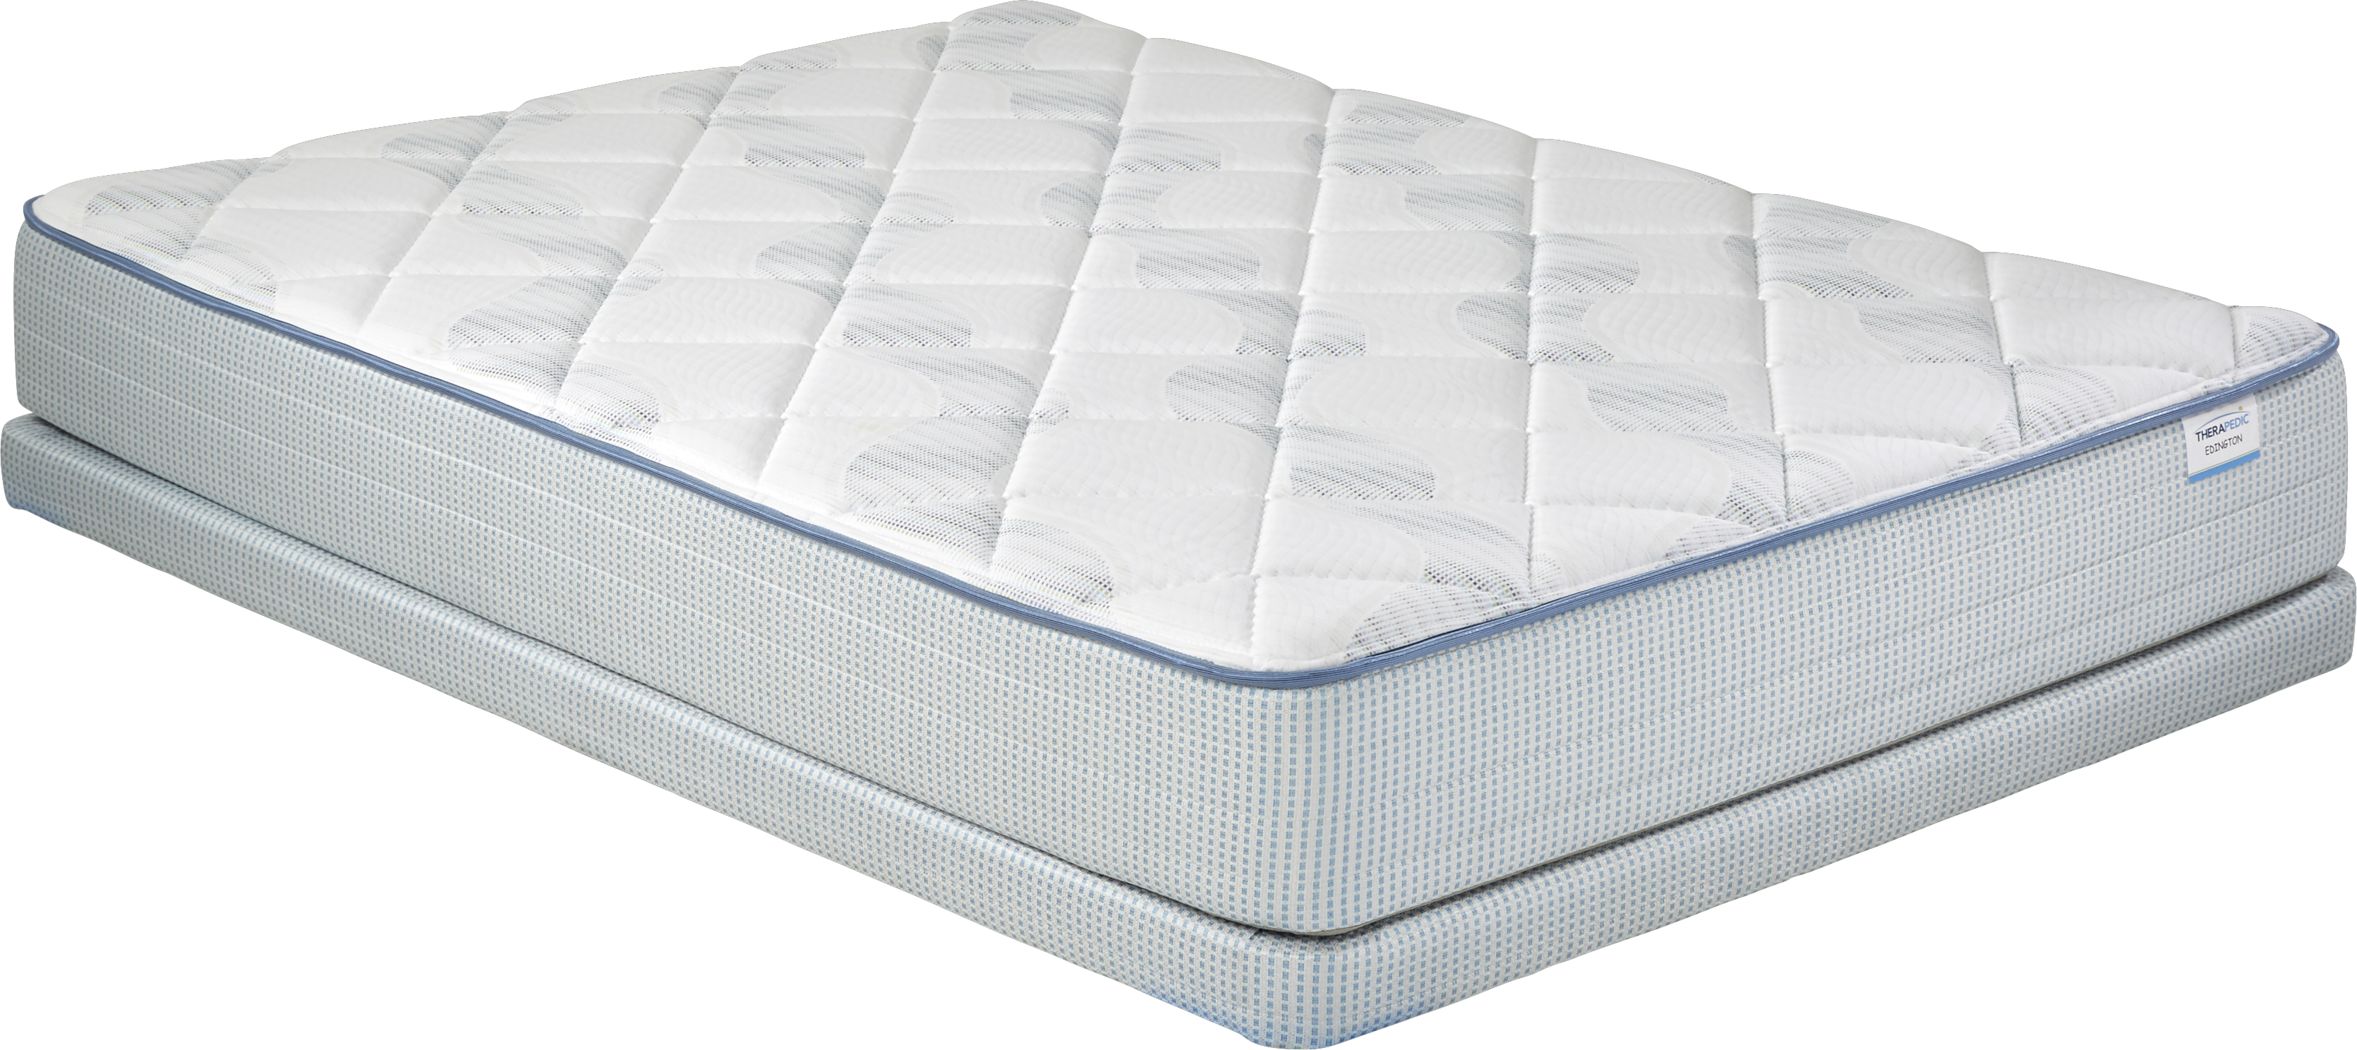 therapedic full mattress set